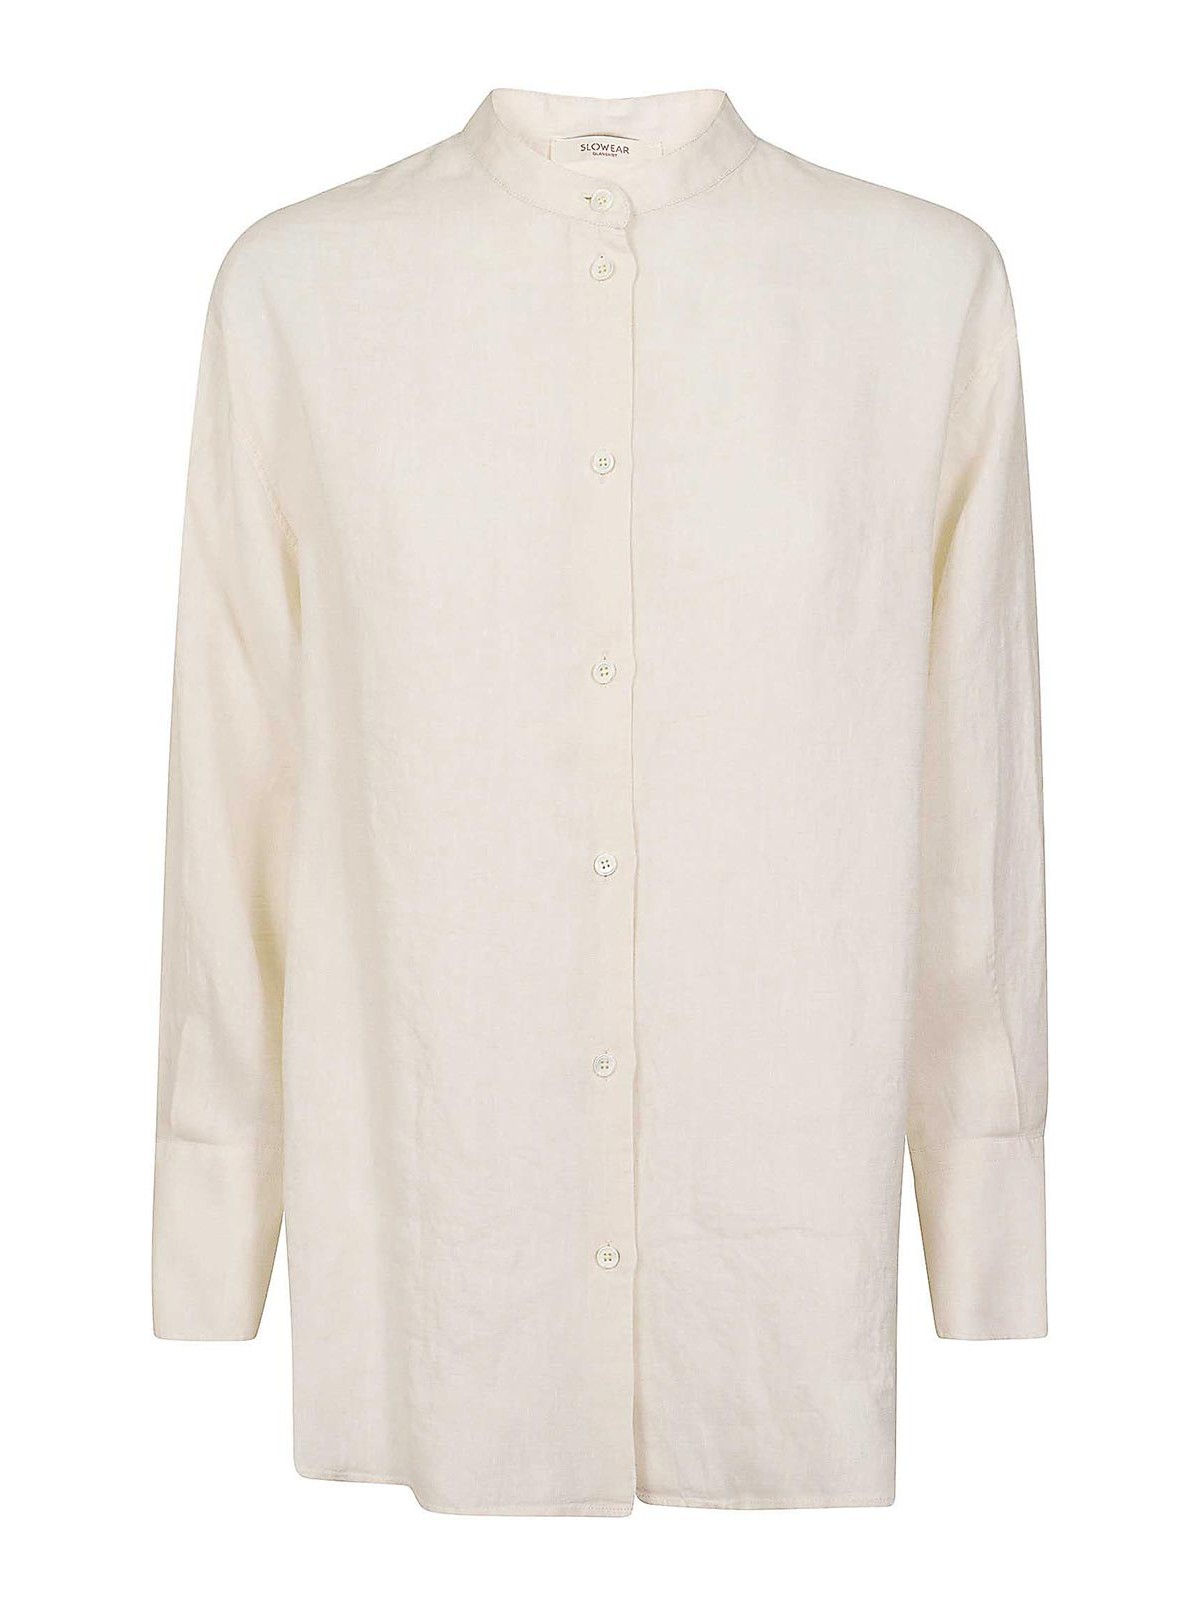 Zanone Shirt In Cream